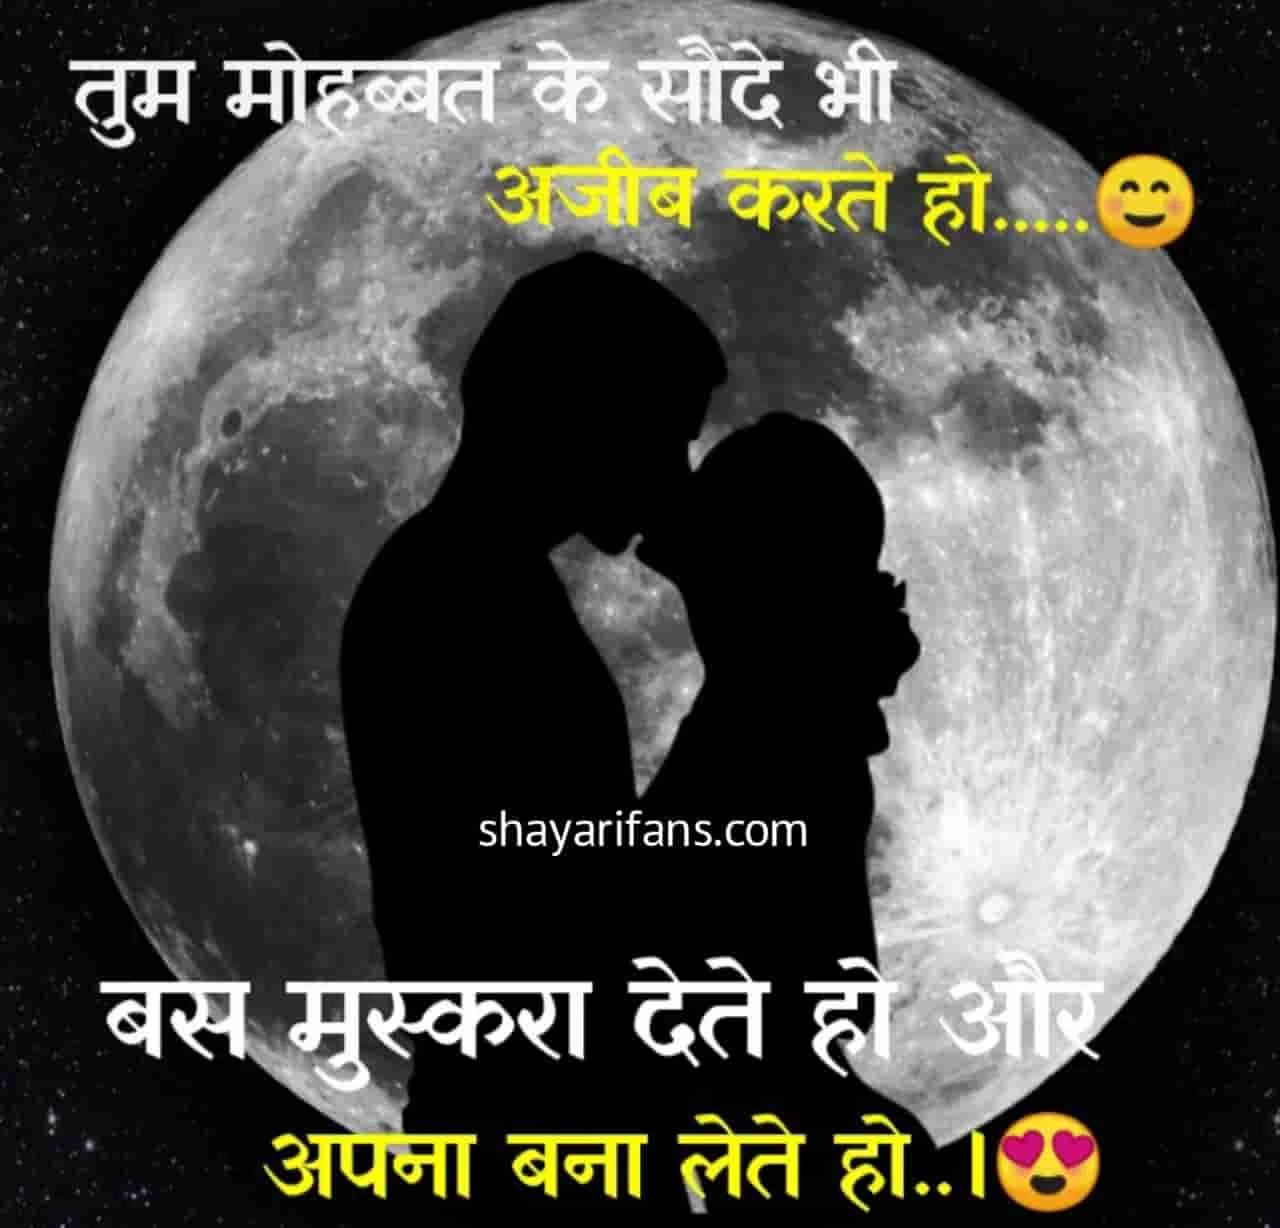 Love Shayari in Hindi 